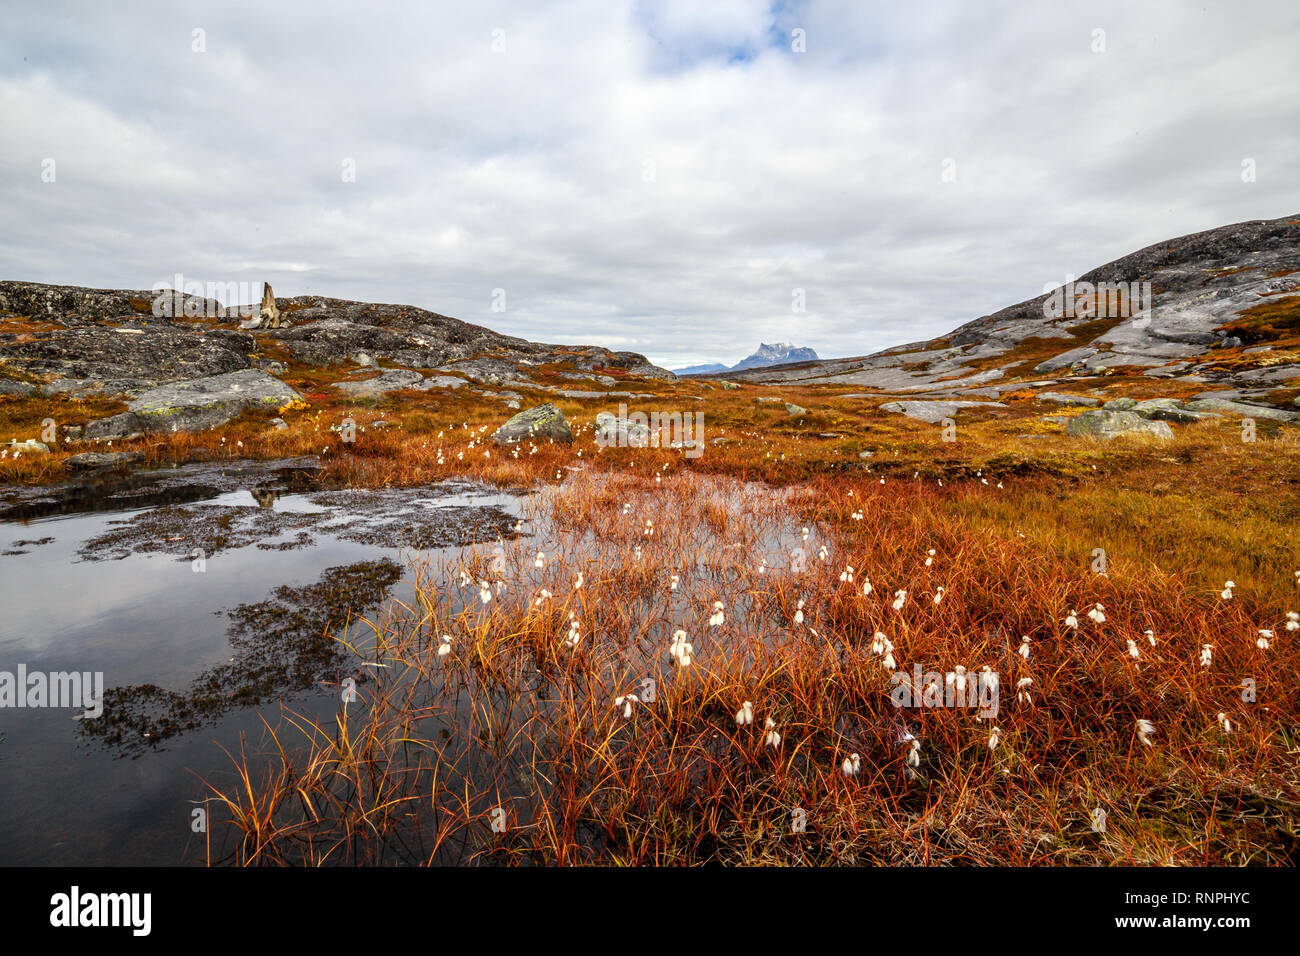 Autunno groenlandese tundra arancione paesaggio con marsh, fiori bianchi e pietre in background, Nuuk, Groenlandia Foto Stock